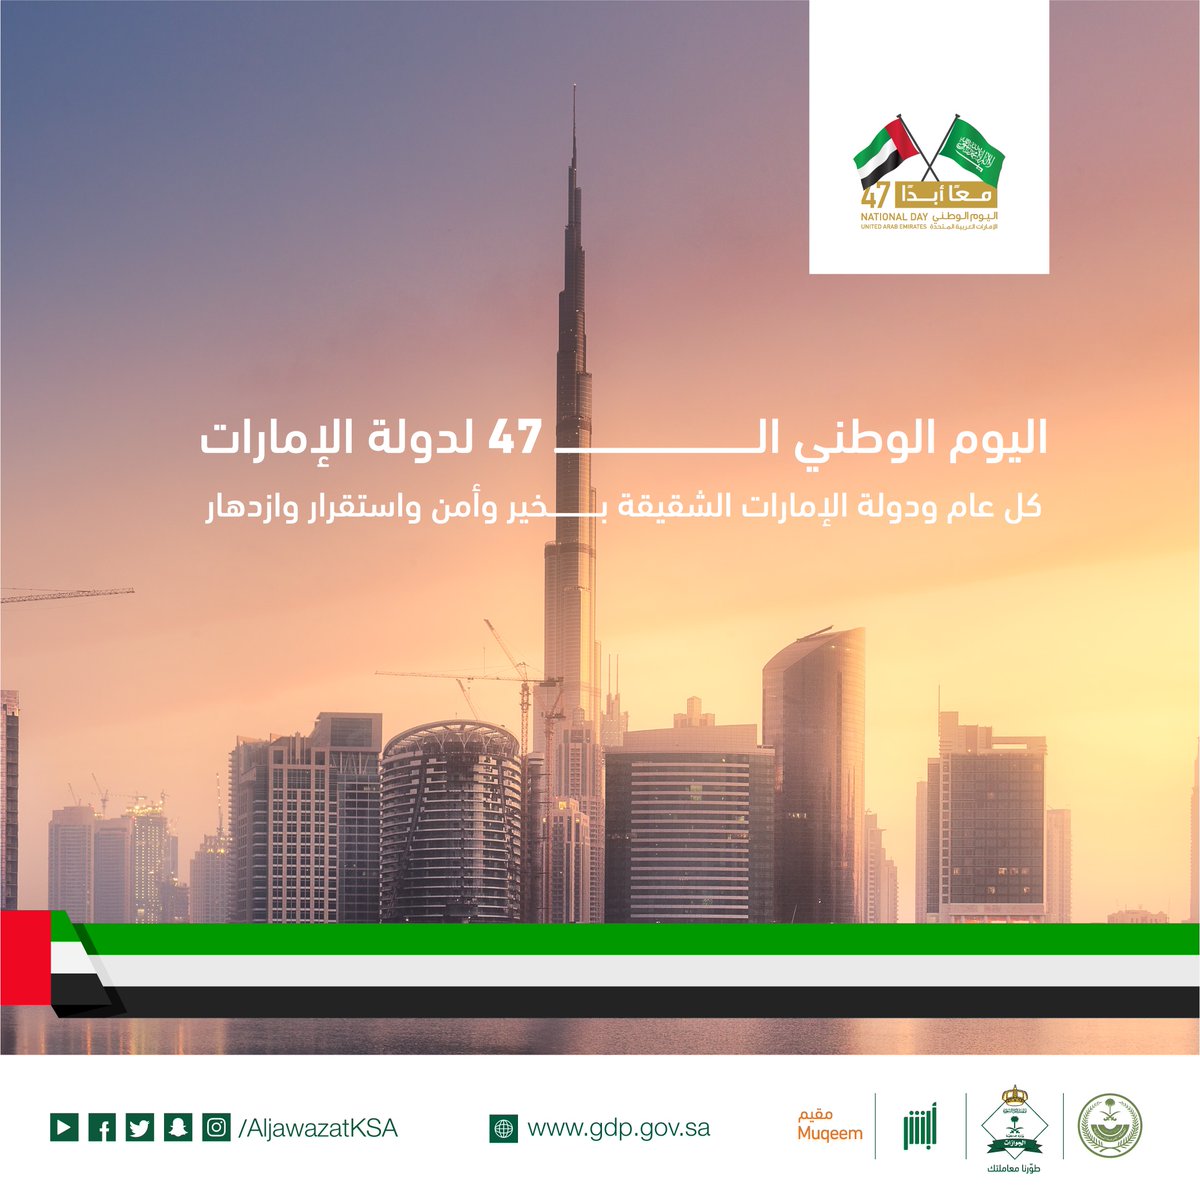 تصميم موحد لكافة قطاعات الداخلية لتهنئة الإمارات بيومها الوطني 47